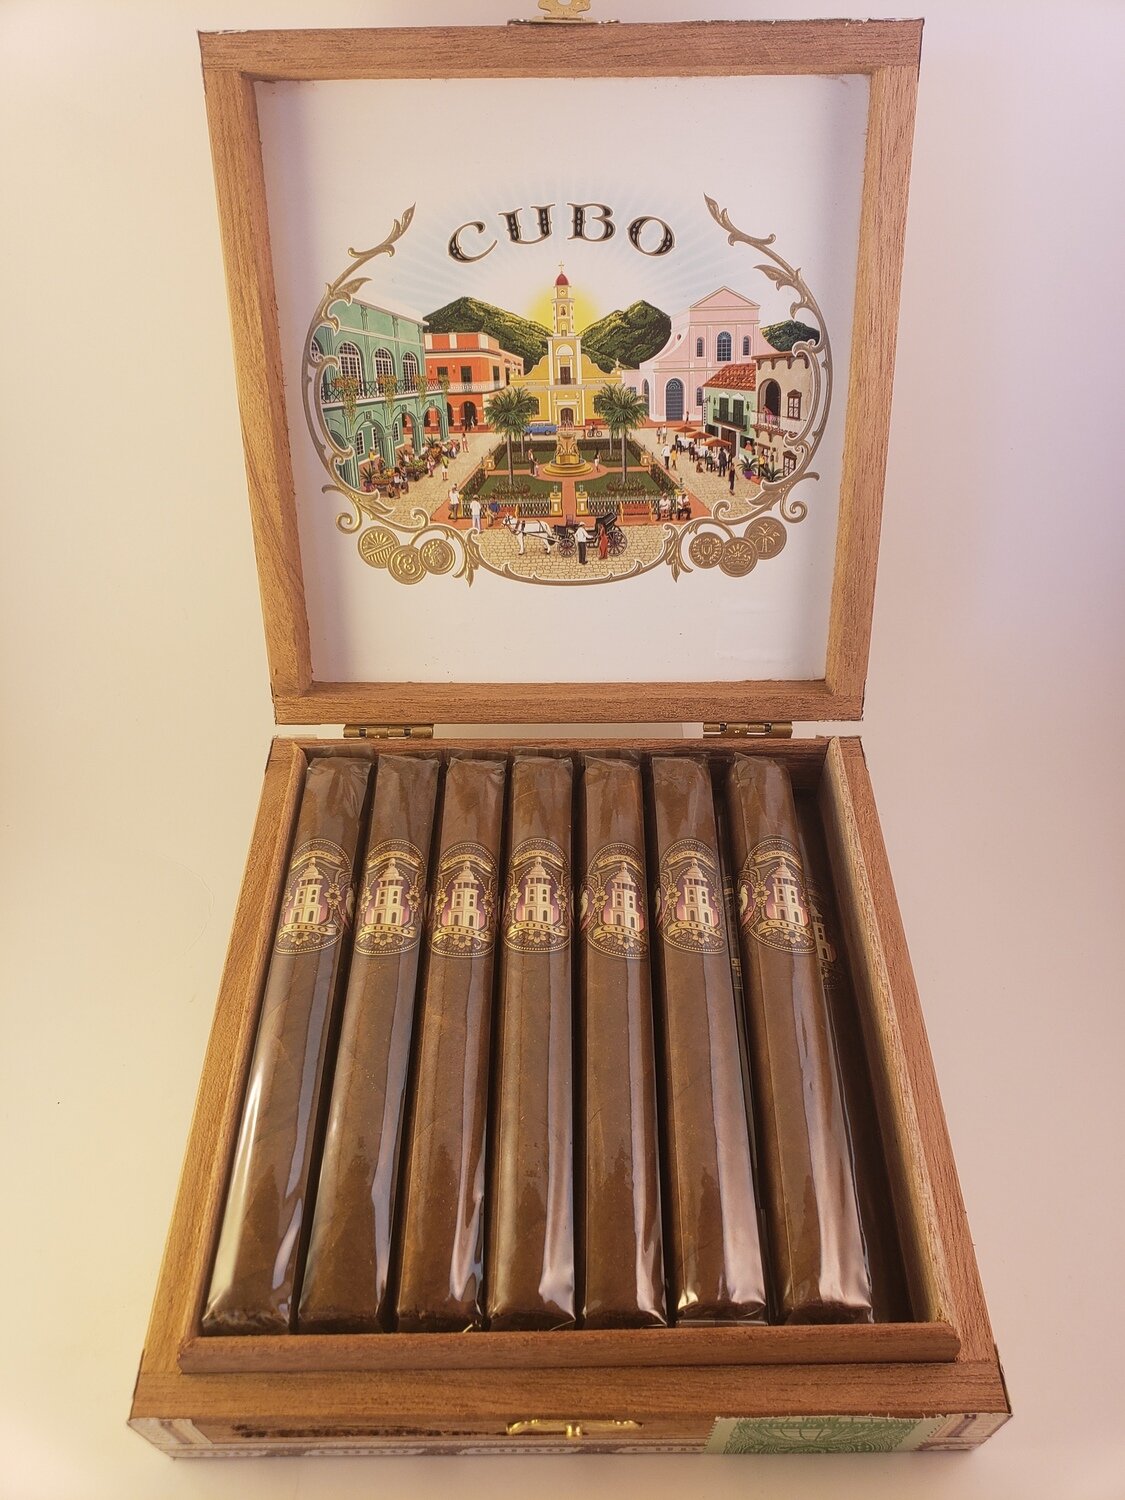 Dapper Cubo Sumatra Toro 6.12 x 50 Single Cigar